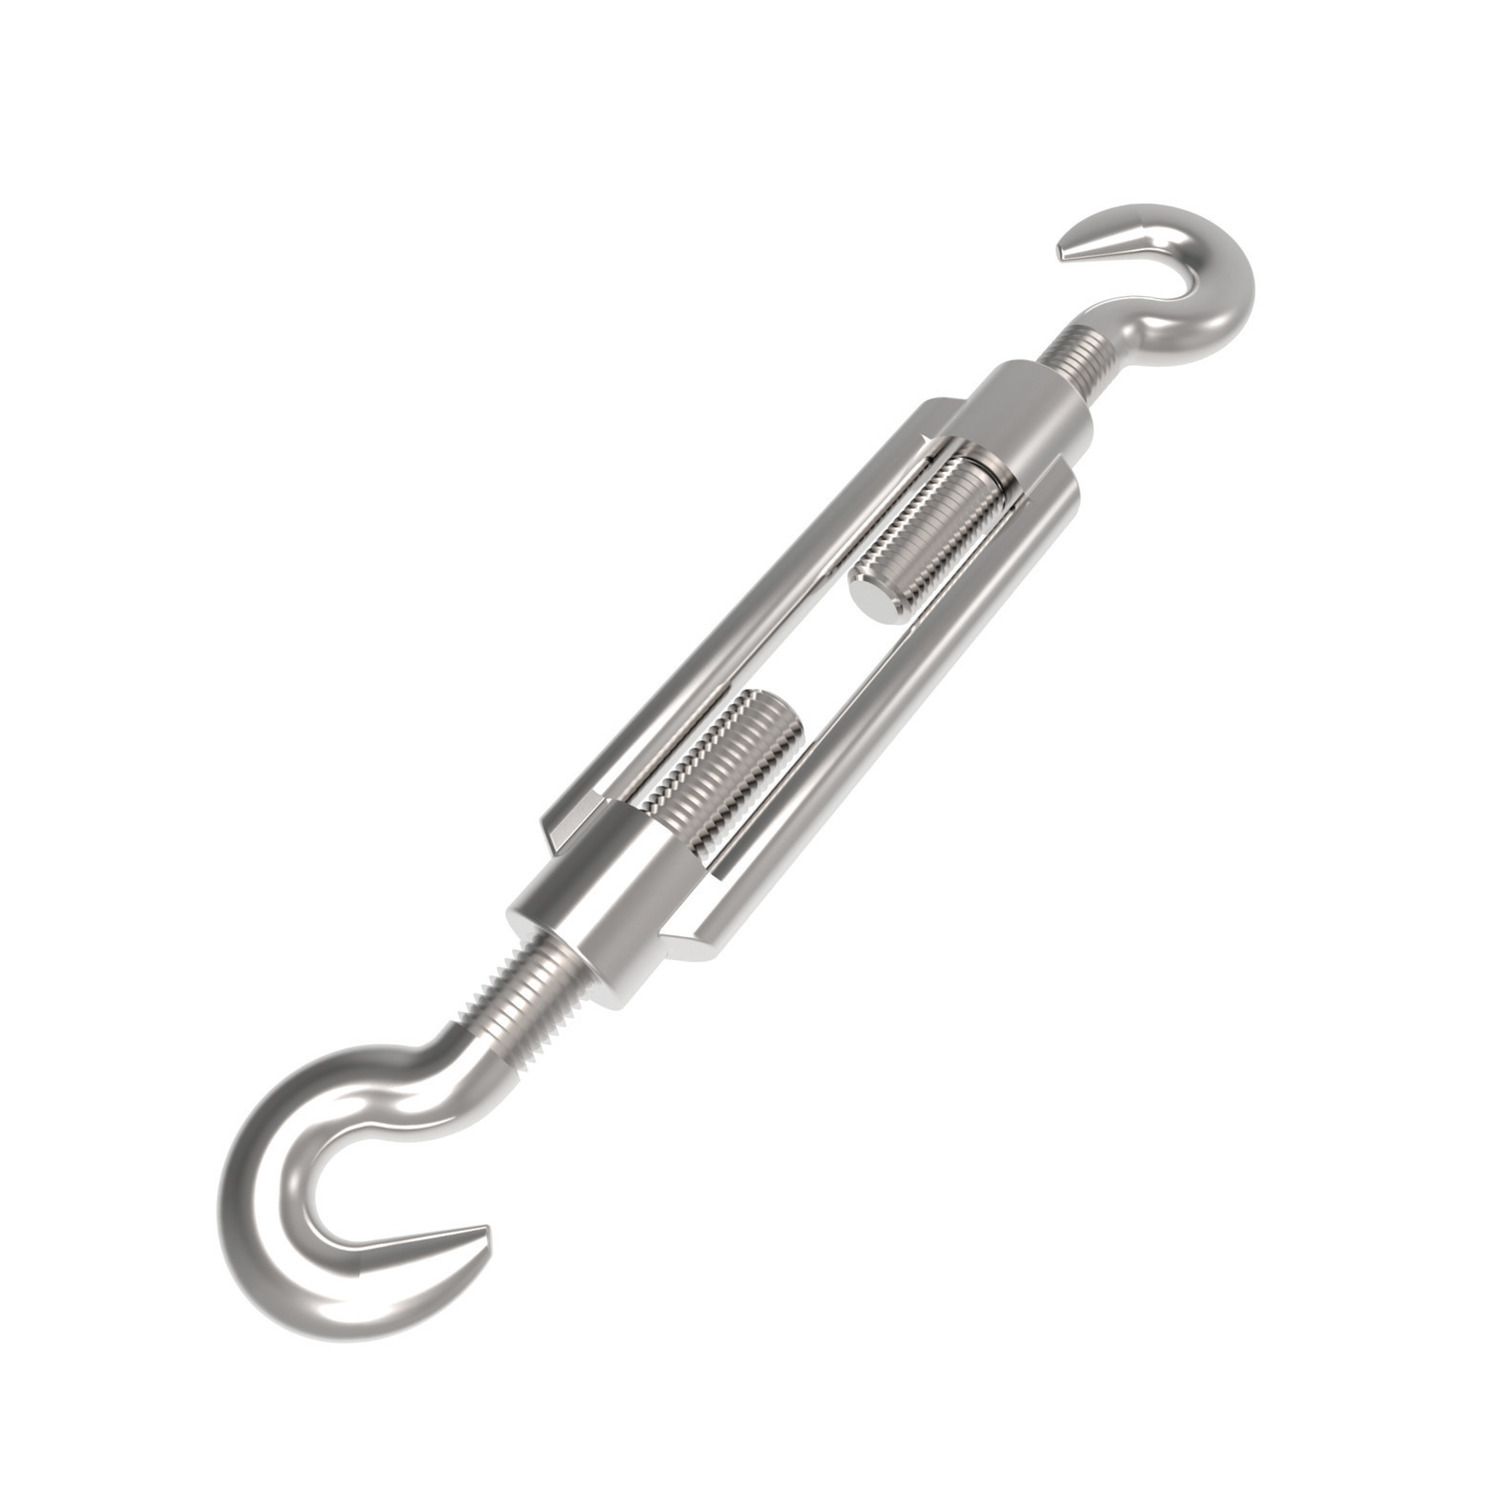 Product R3844, Hook End Turnbuckles steel / 